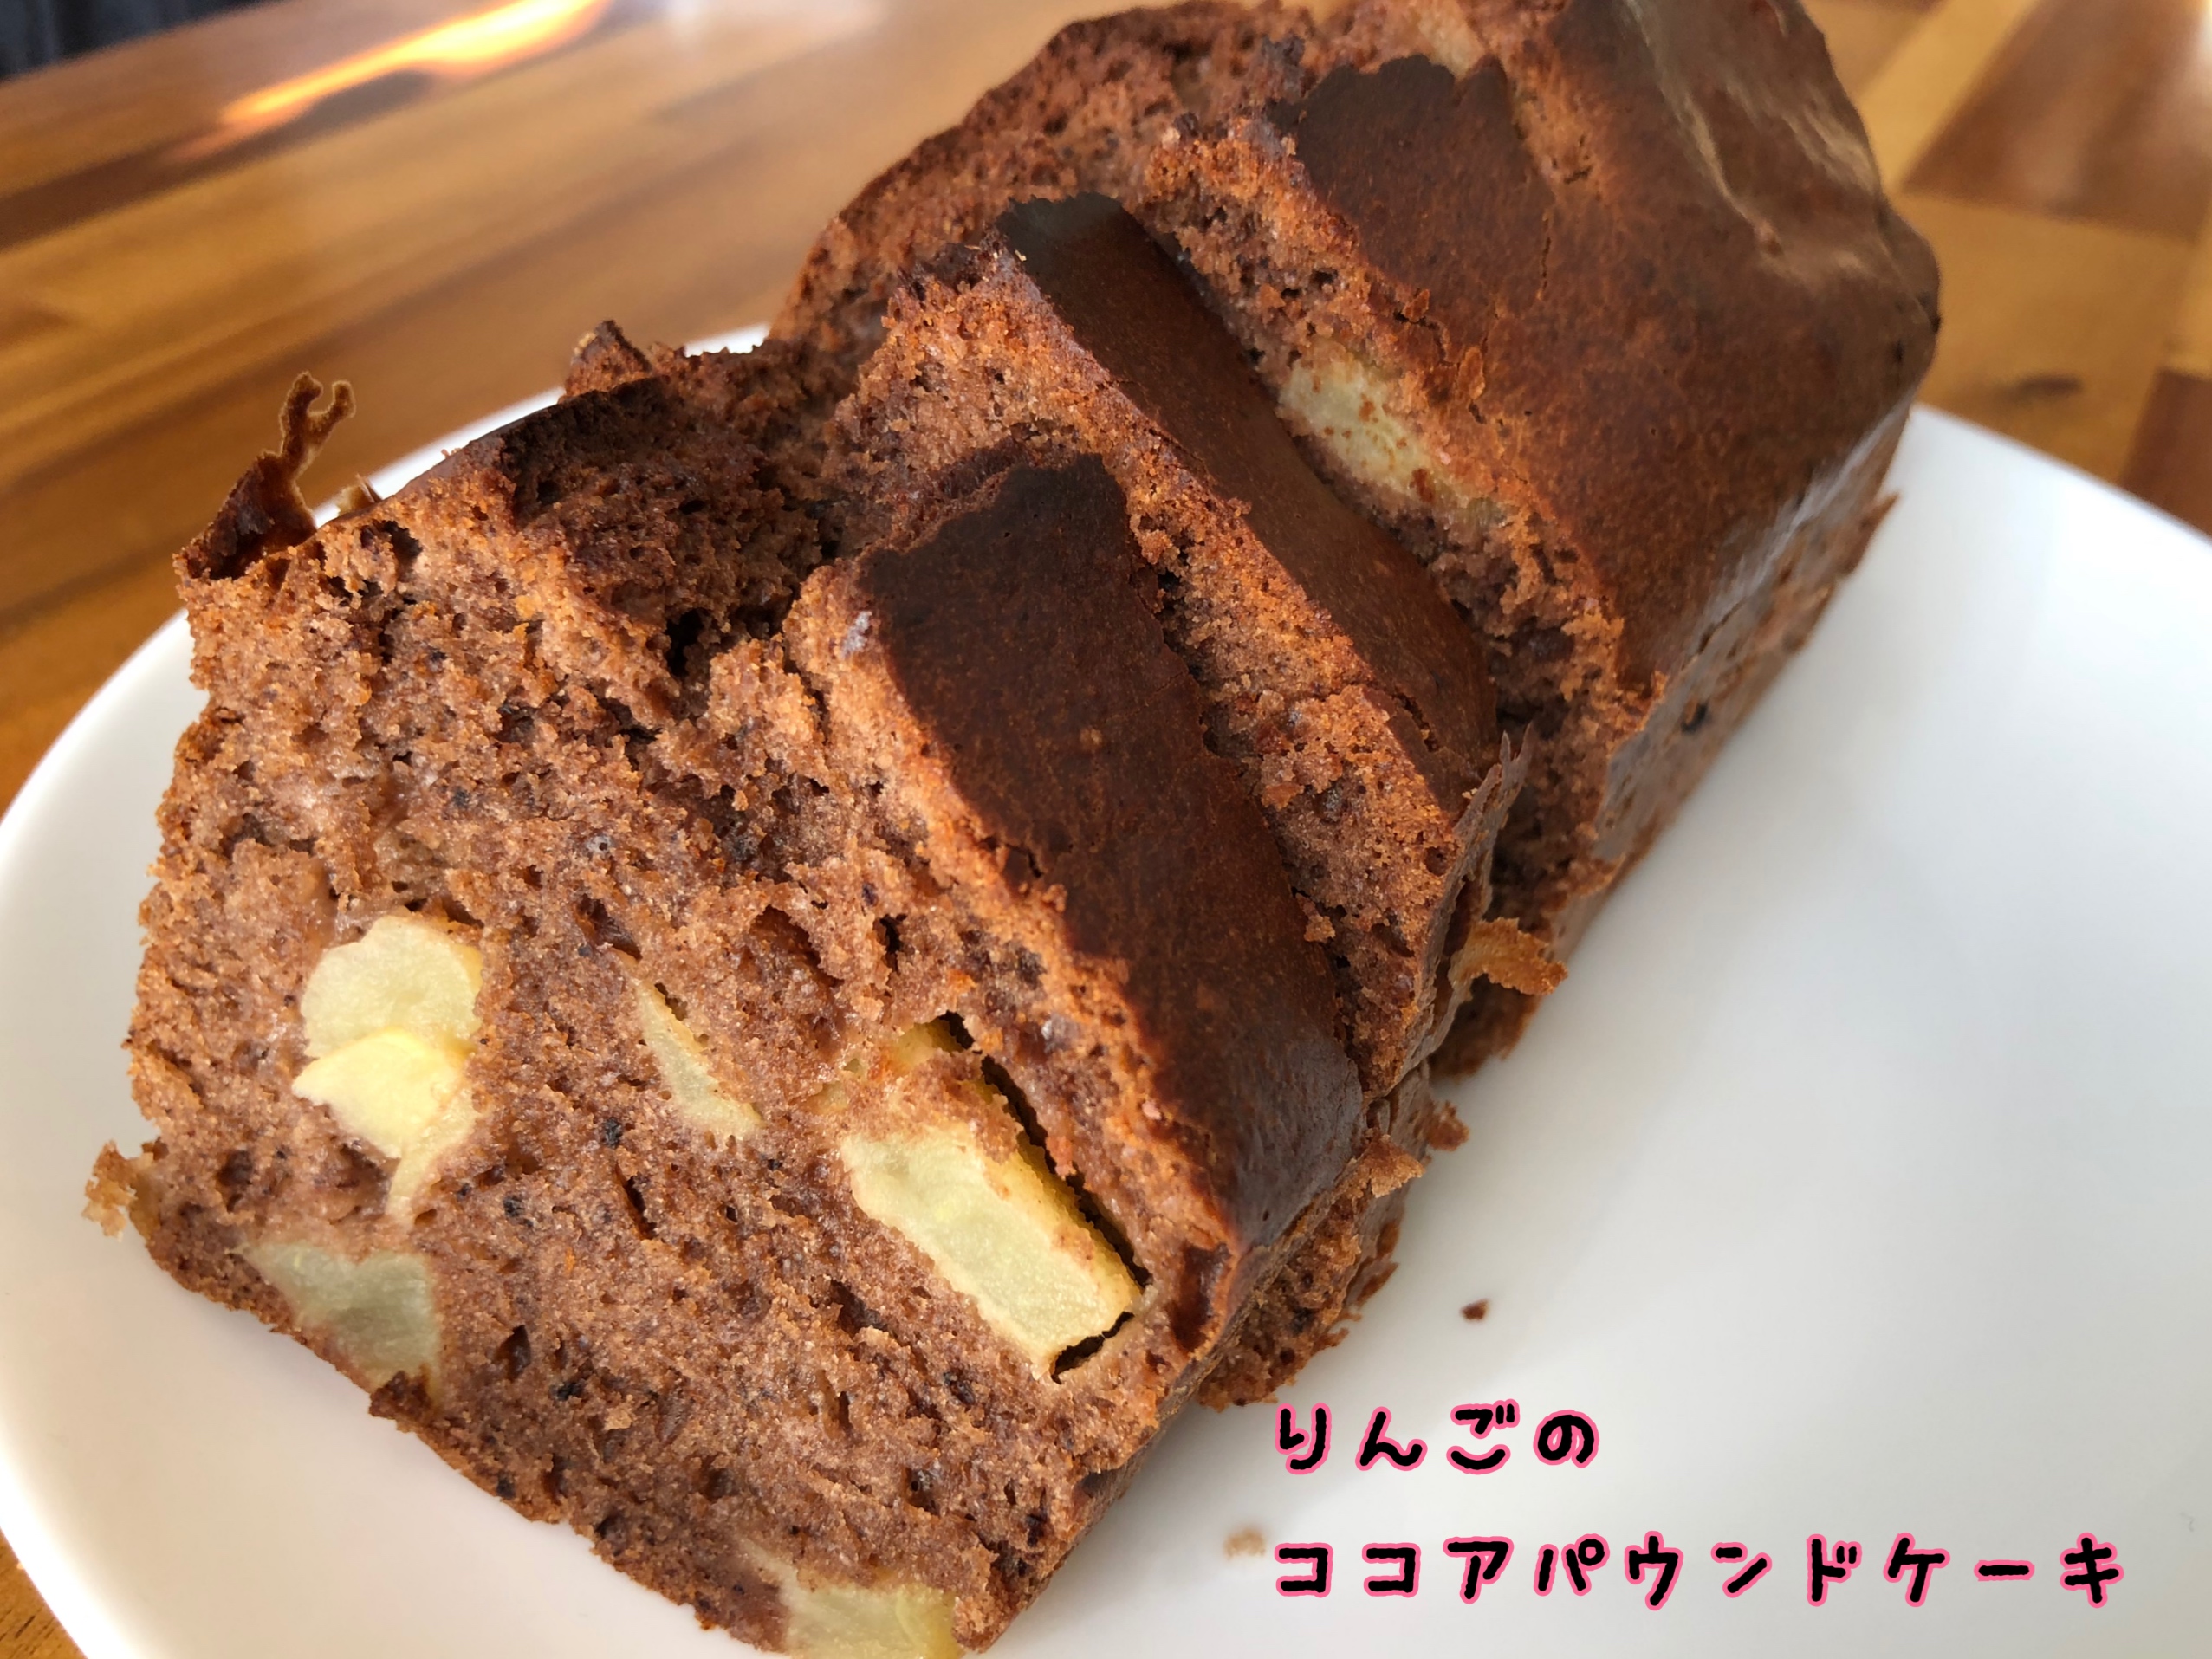 ケーキ ココア パウンド 「超低糖質*ココアマーブルパウンドケーキ」でりしゃす!